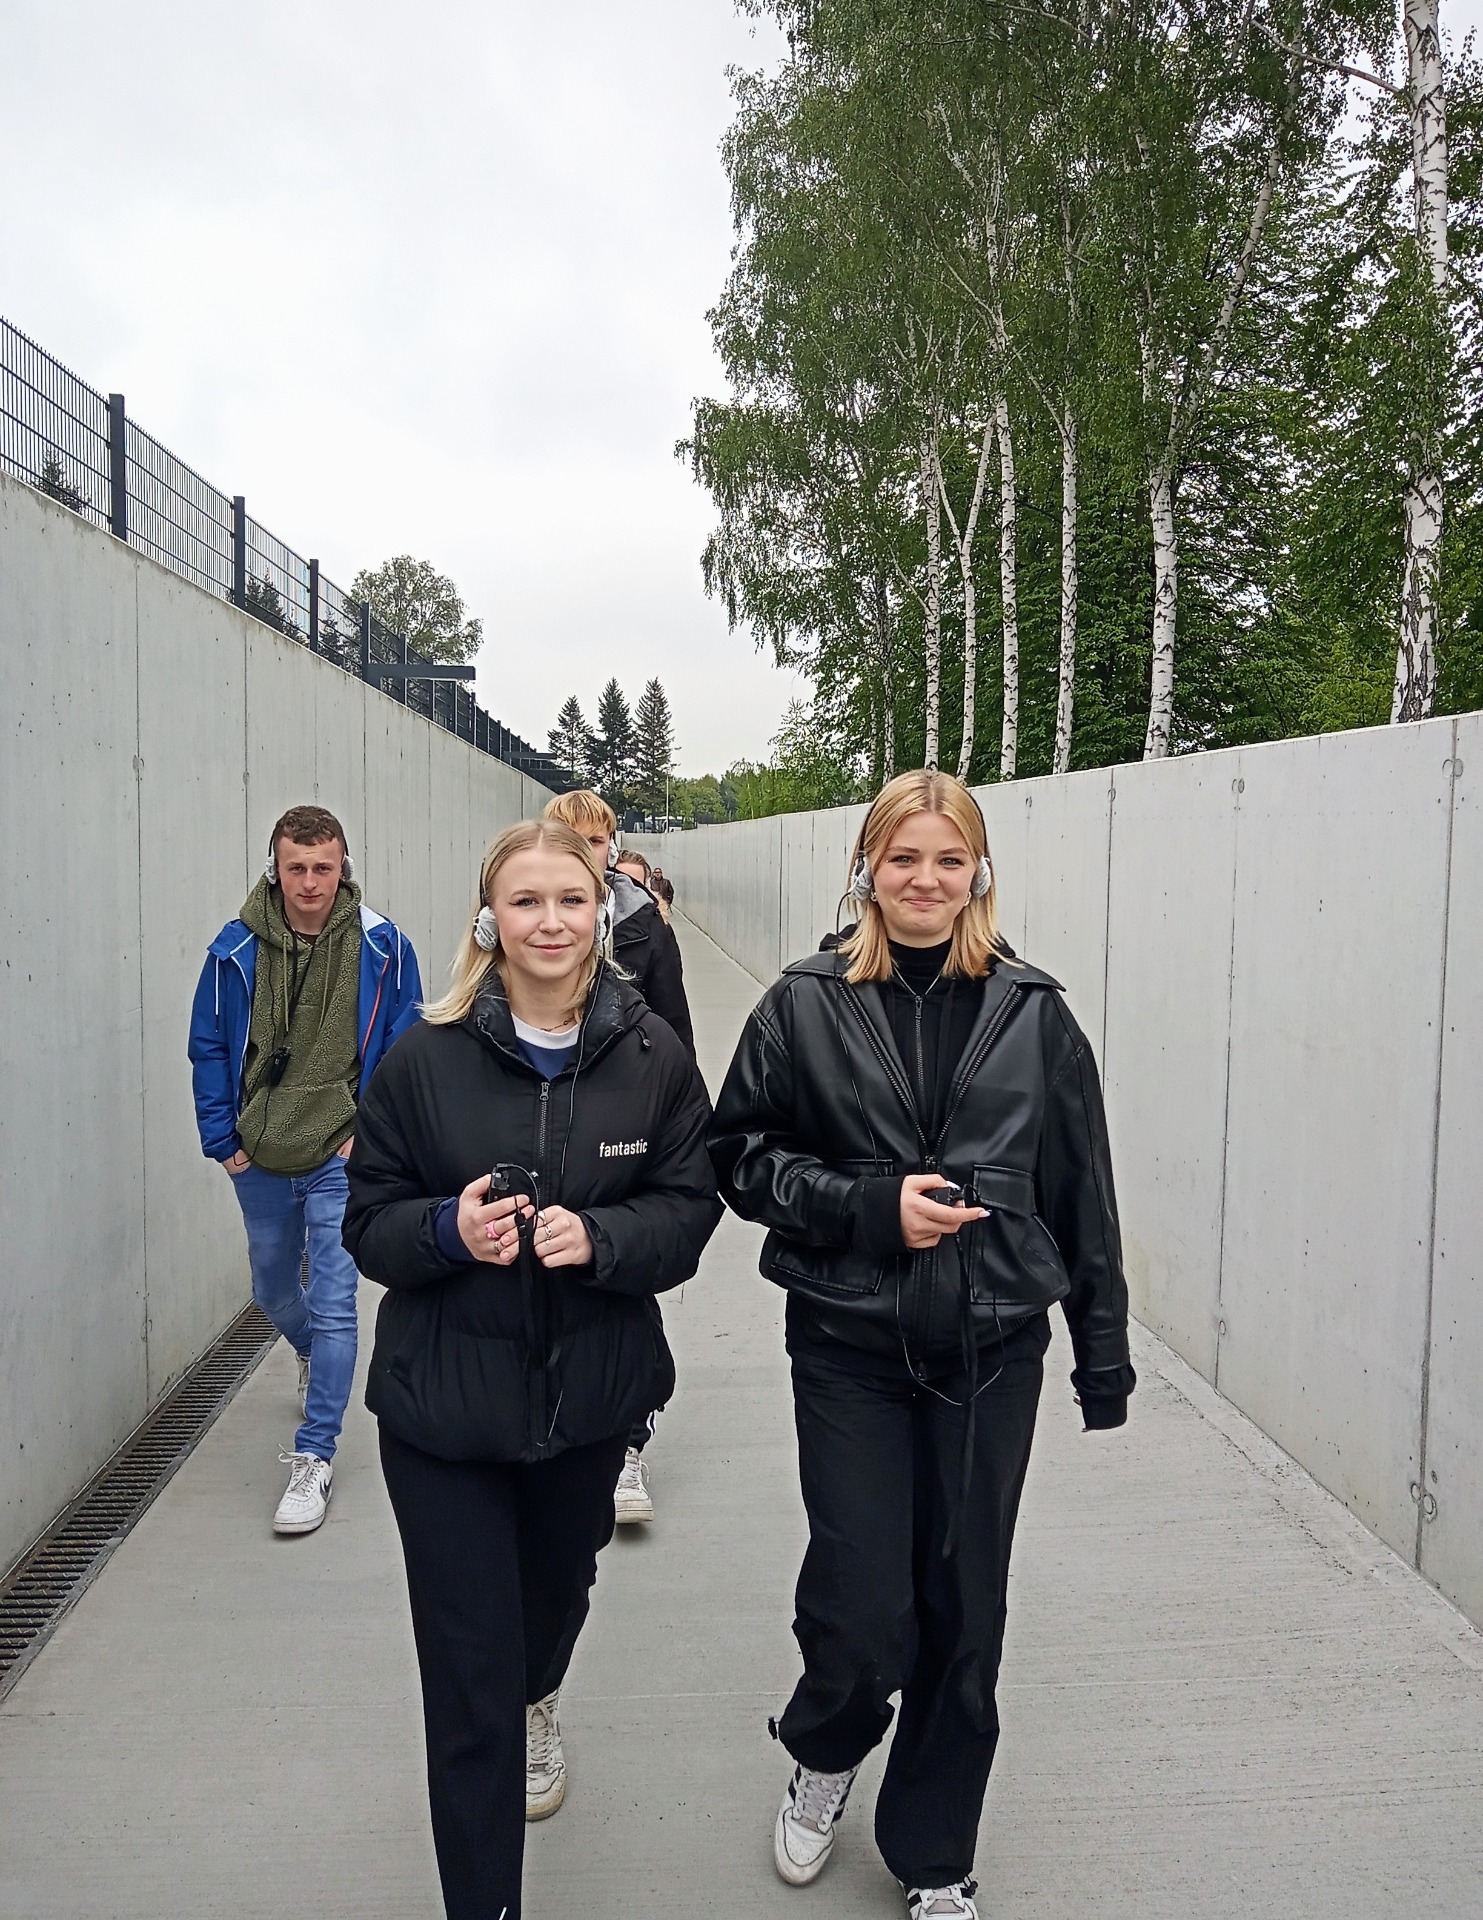 ,,Jedenaste. Nie bądź obojętny” – wizyta uczniów RST  w Miejscu Pamięci Państwowym Muzeum Auschwitz-Birkenau w Oświęcimiu - Obrazek 4